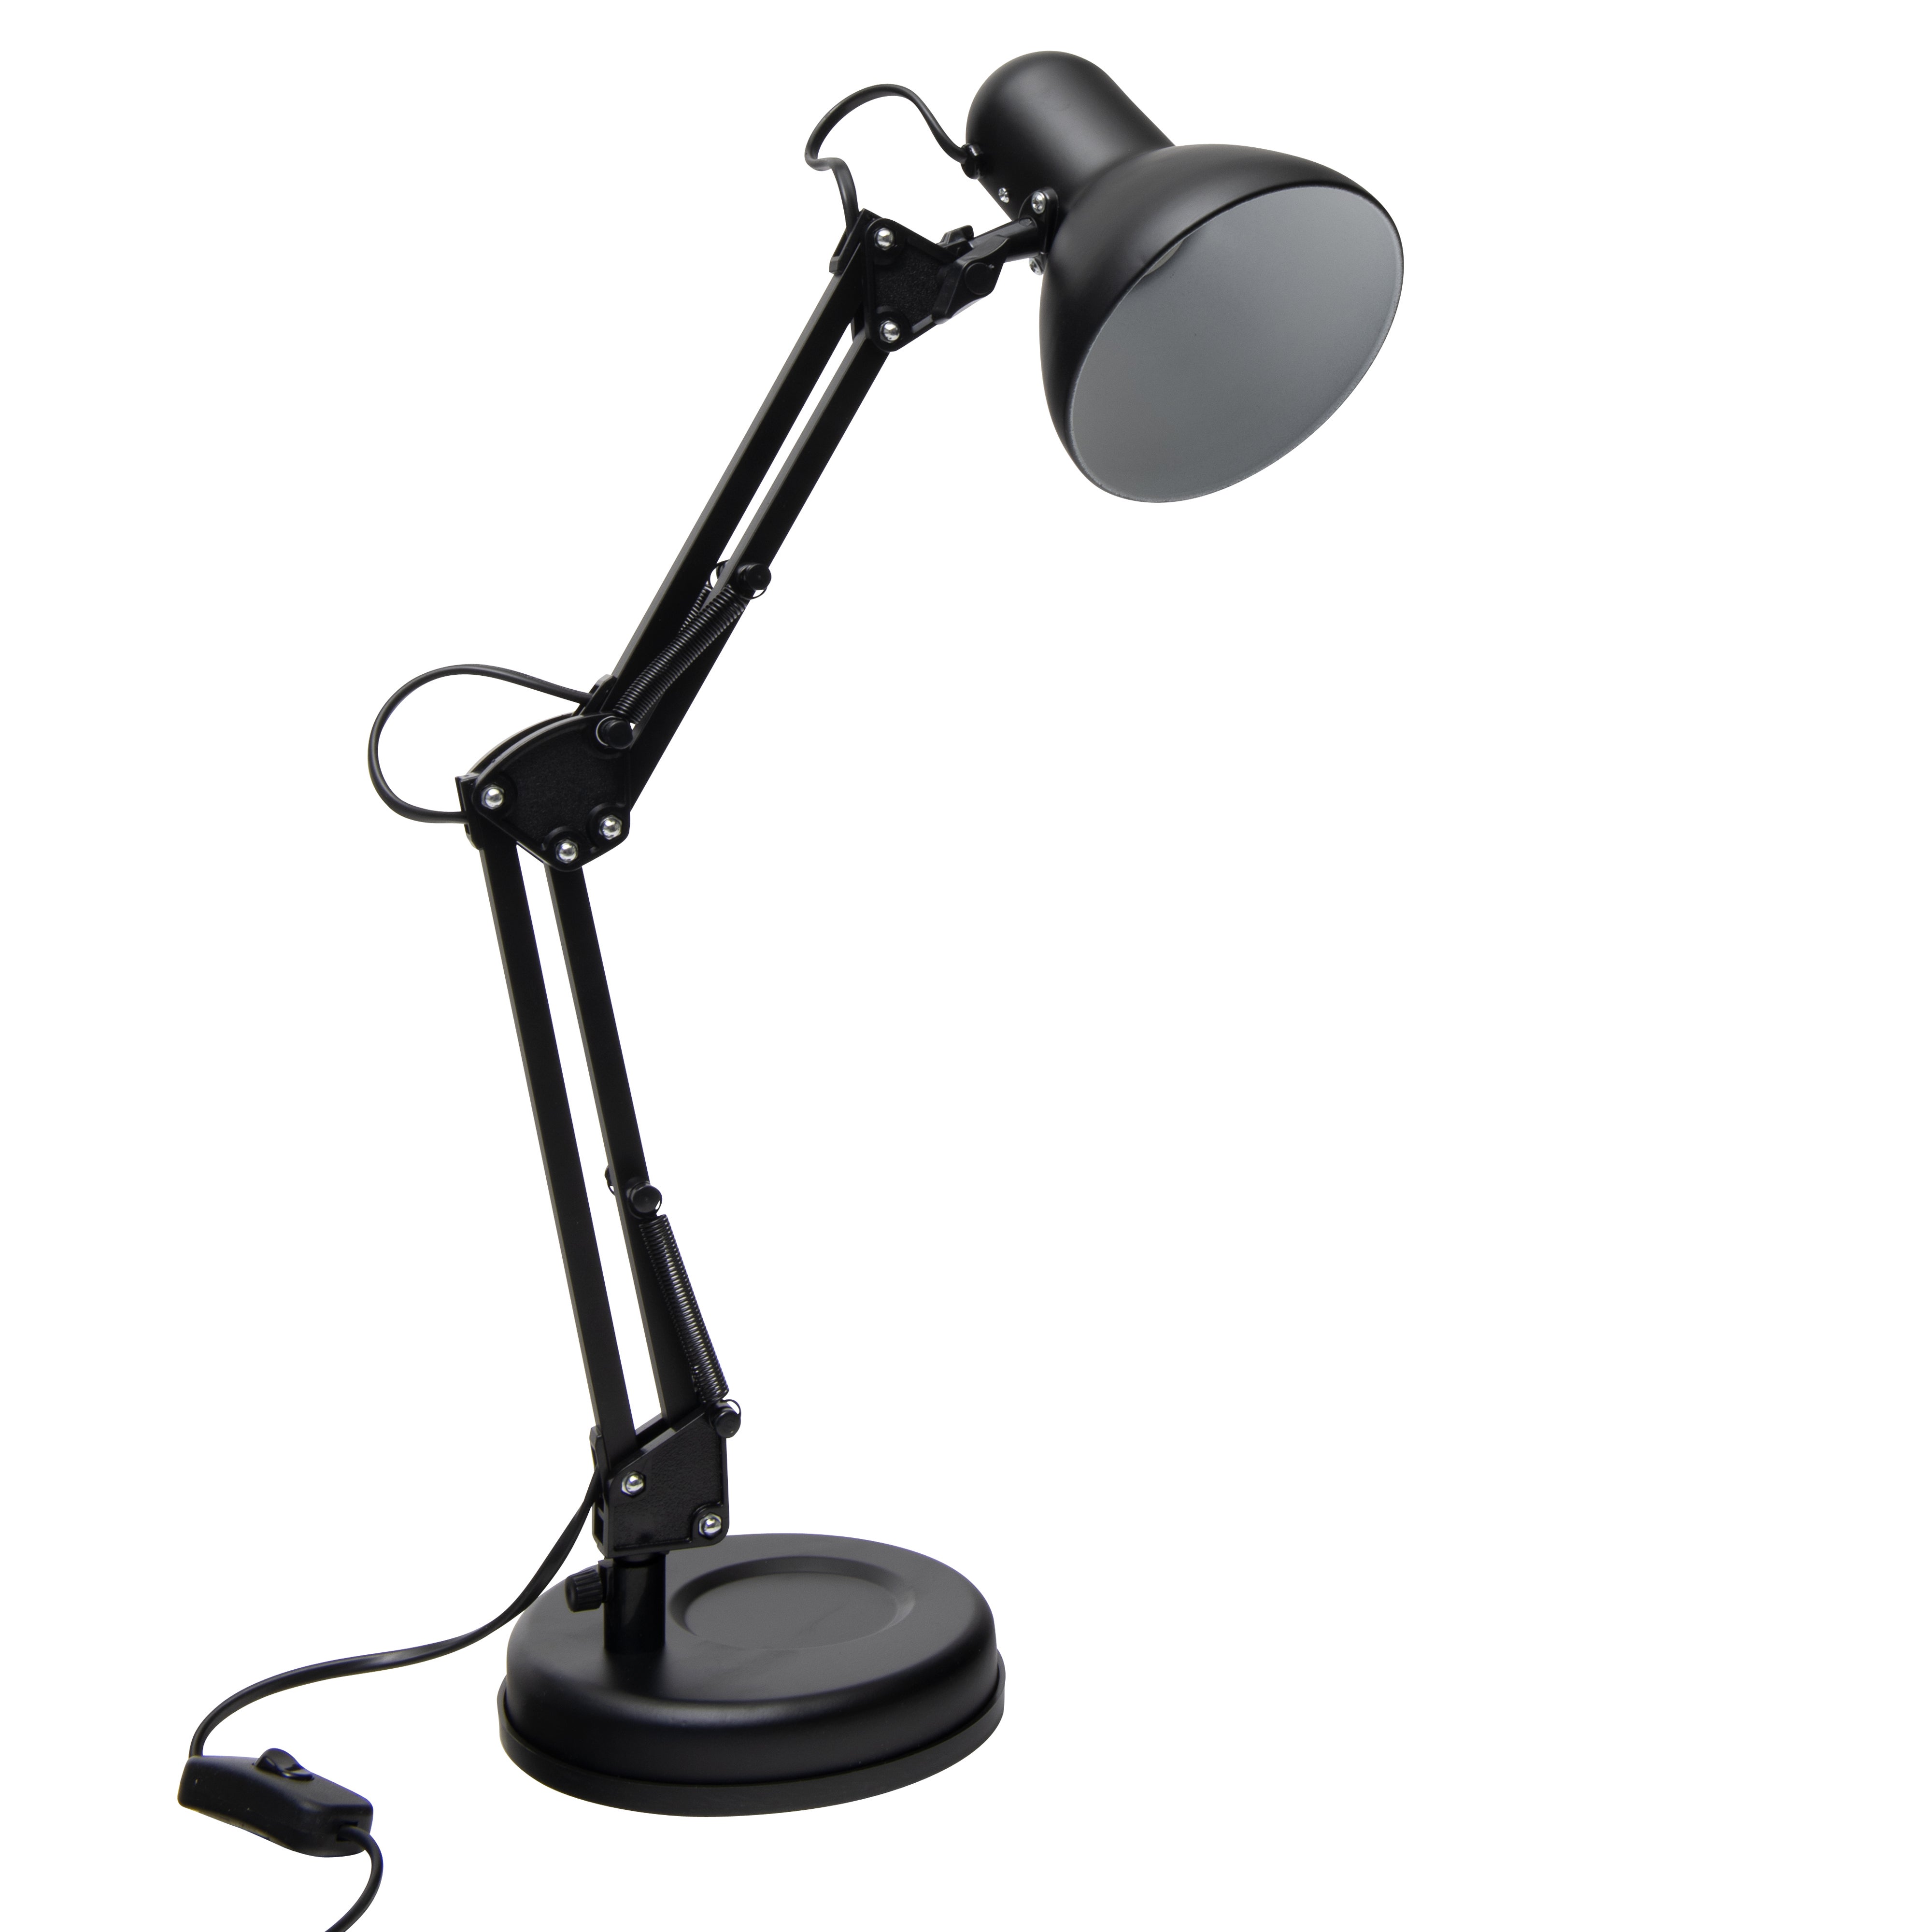 Lampe de bureau LED flexible POST en métal et PVC noir